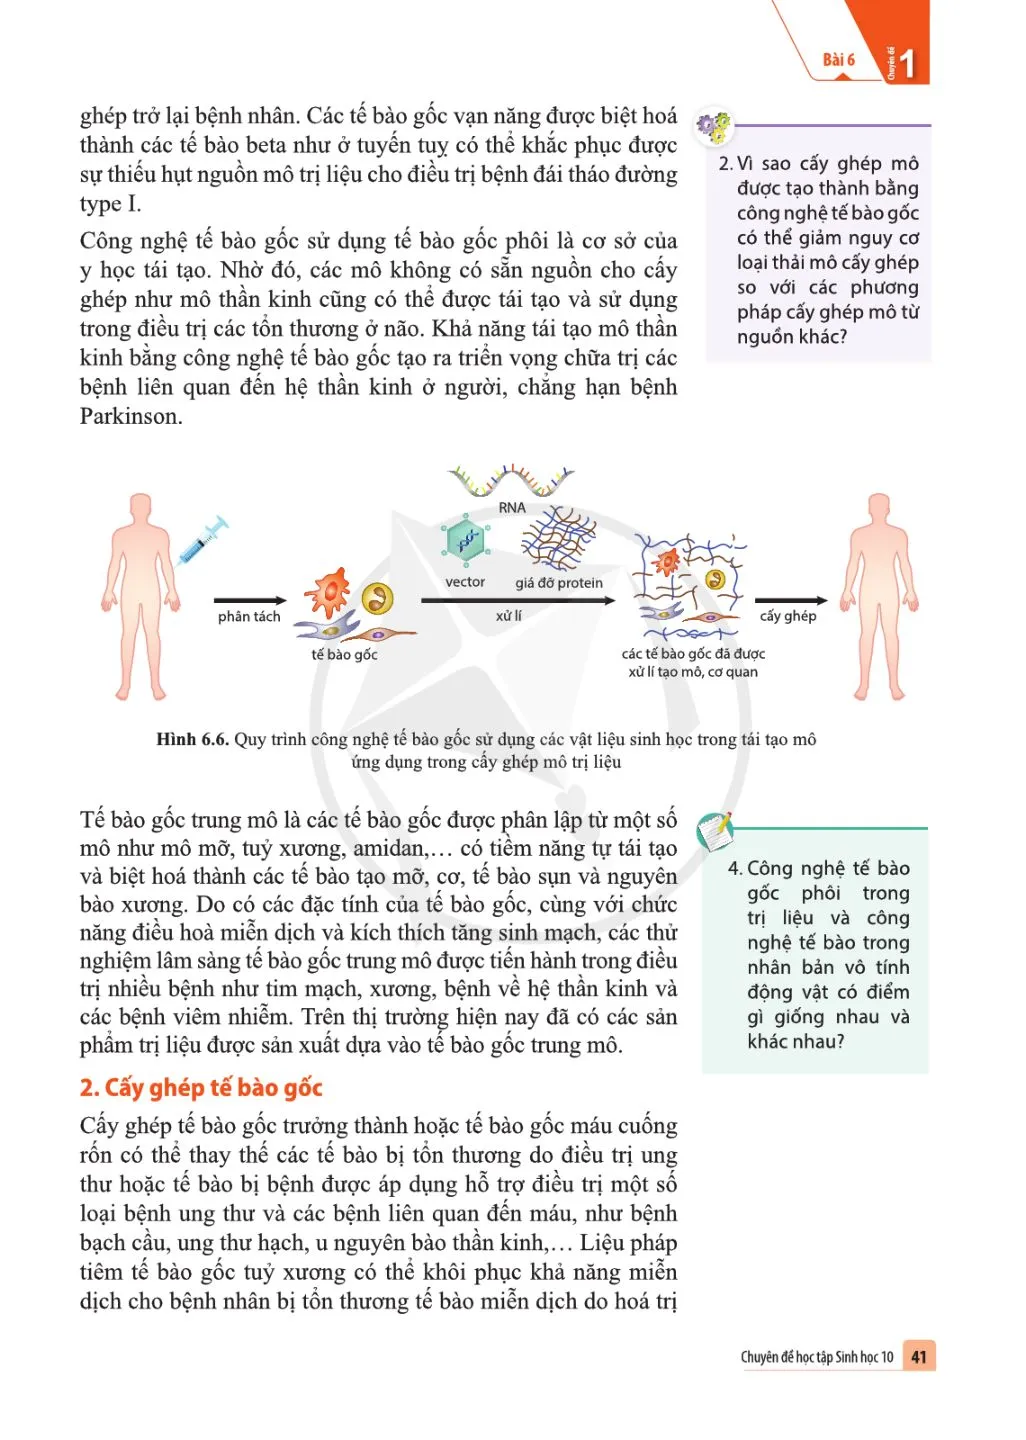 Bài 6 Công nghệ tế bào gốc và ứng dụng